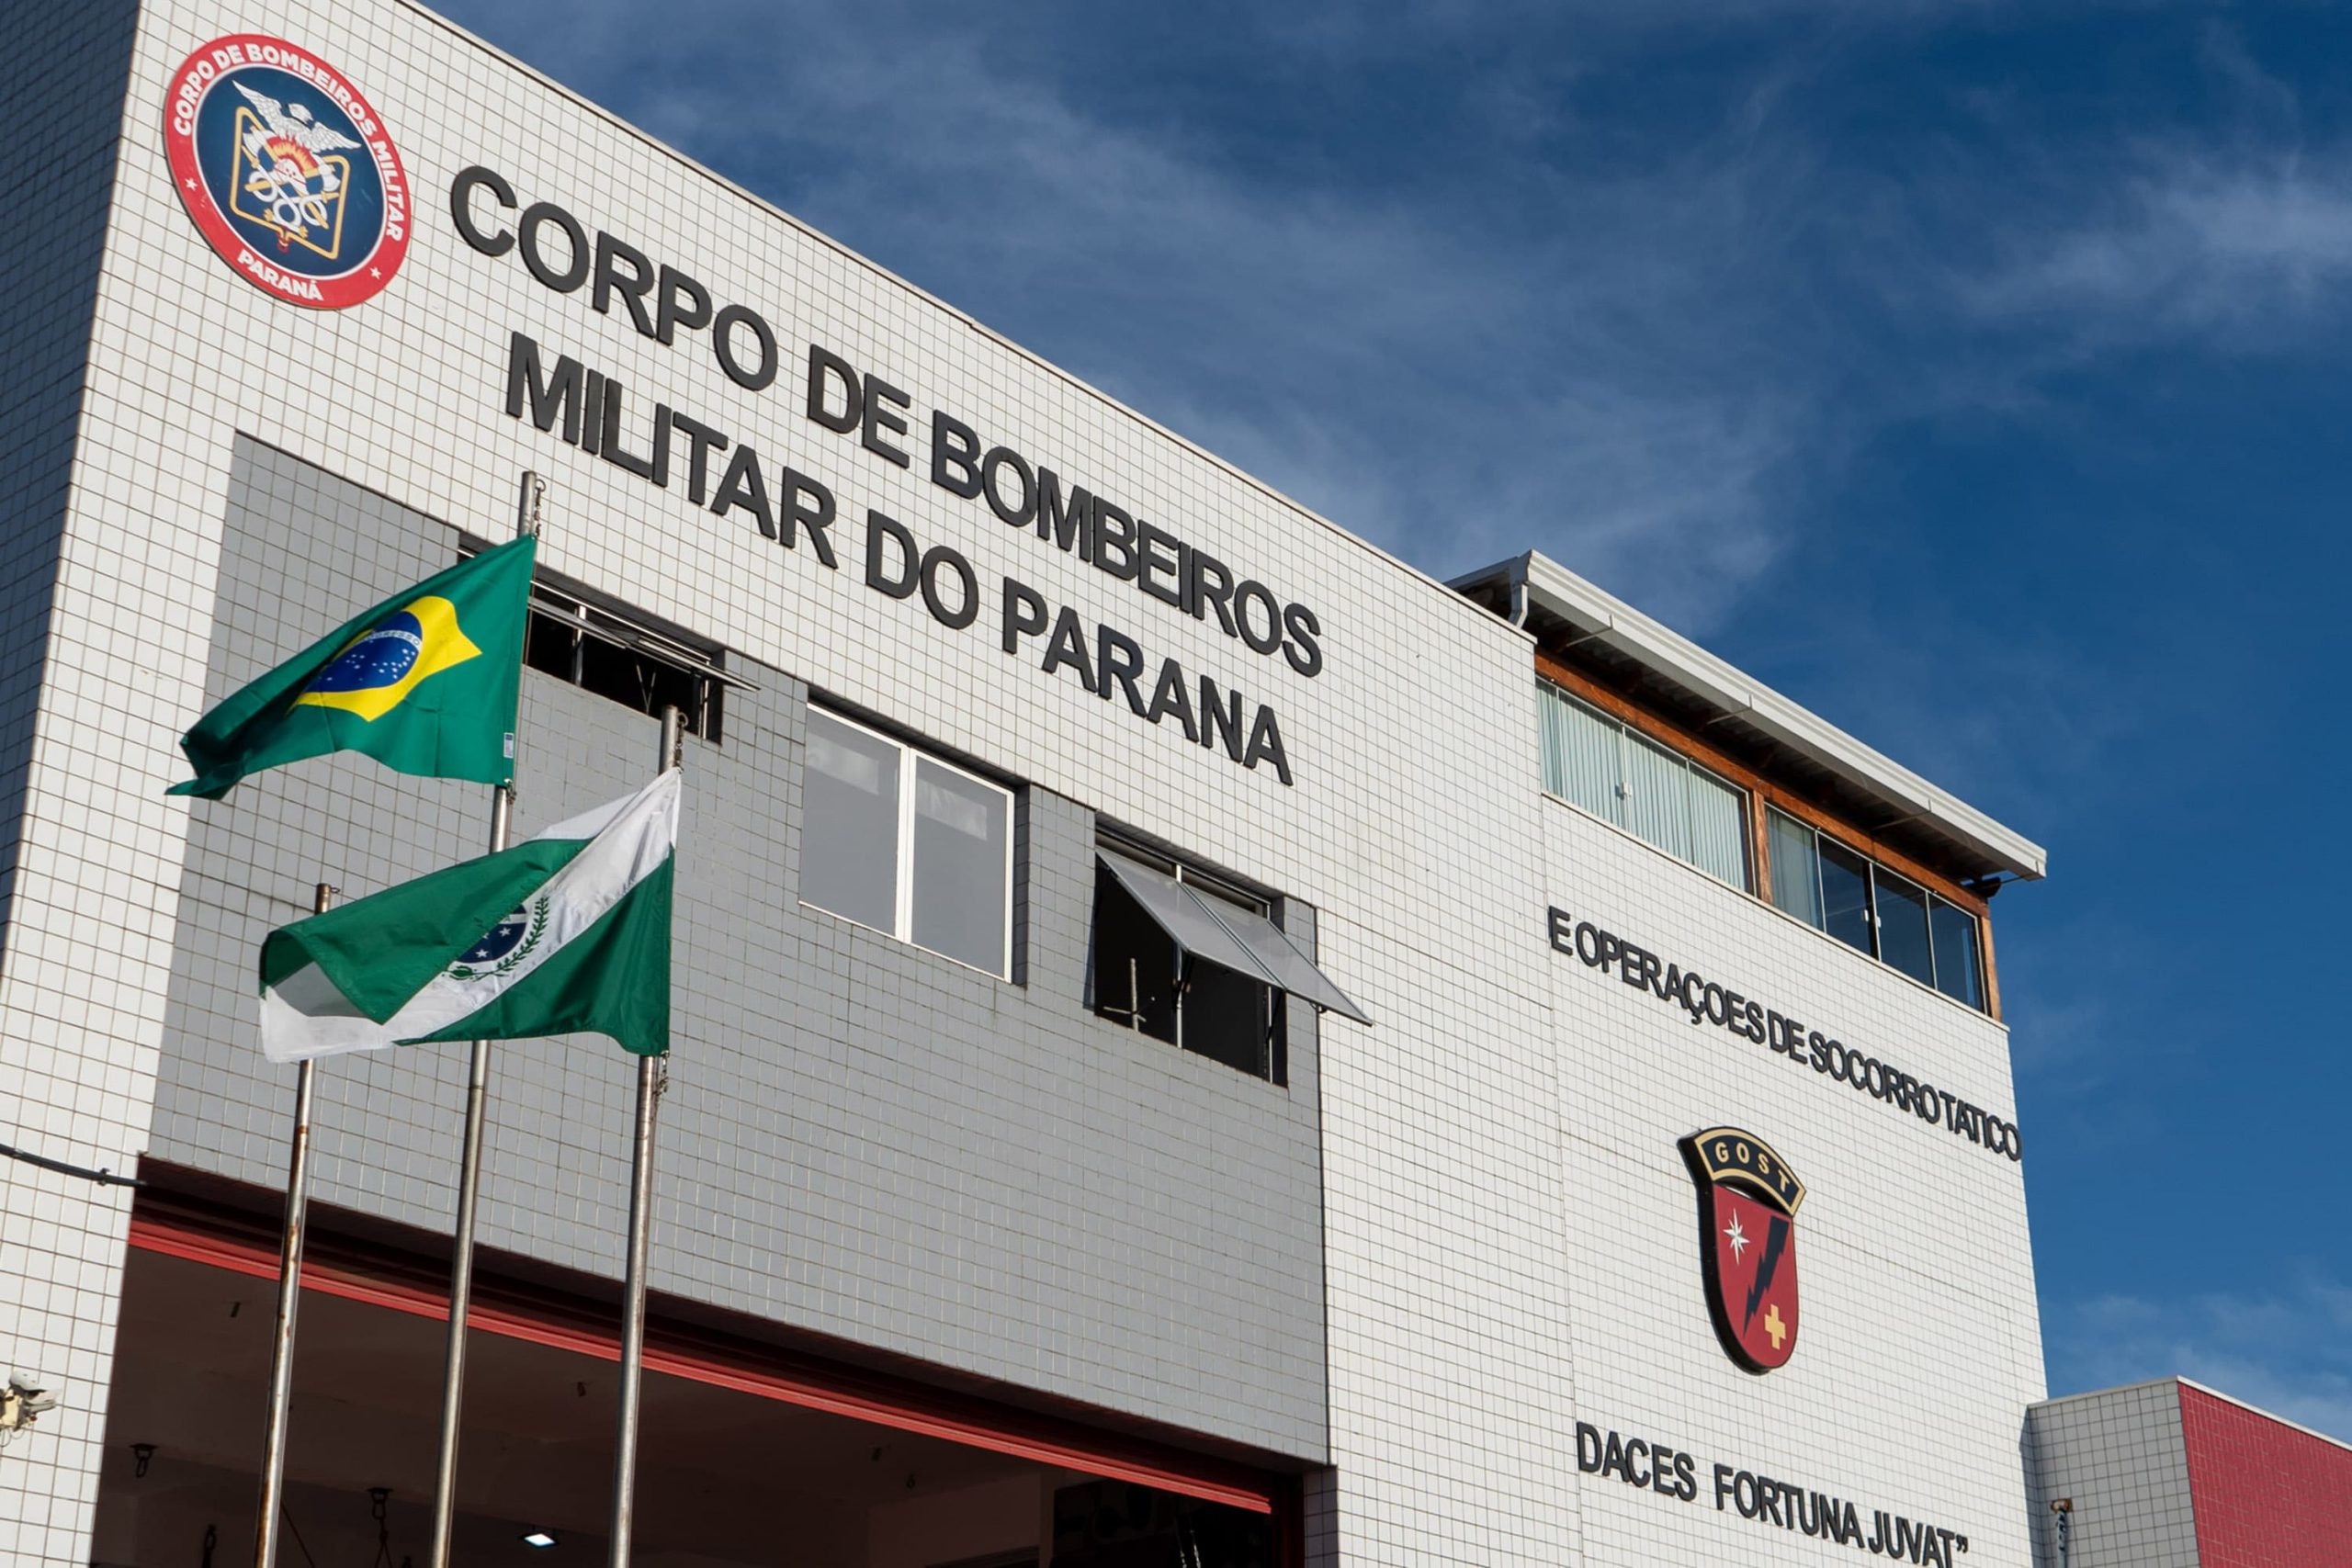 Imagem mostra a fachada do prédio do corpo de bombeiros com duas bandeiras hasteadas na frente, sendo elas do Paraná e do Brasil